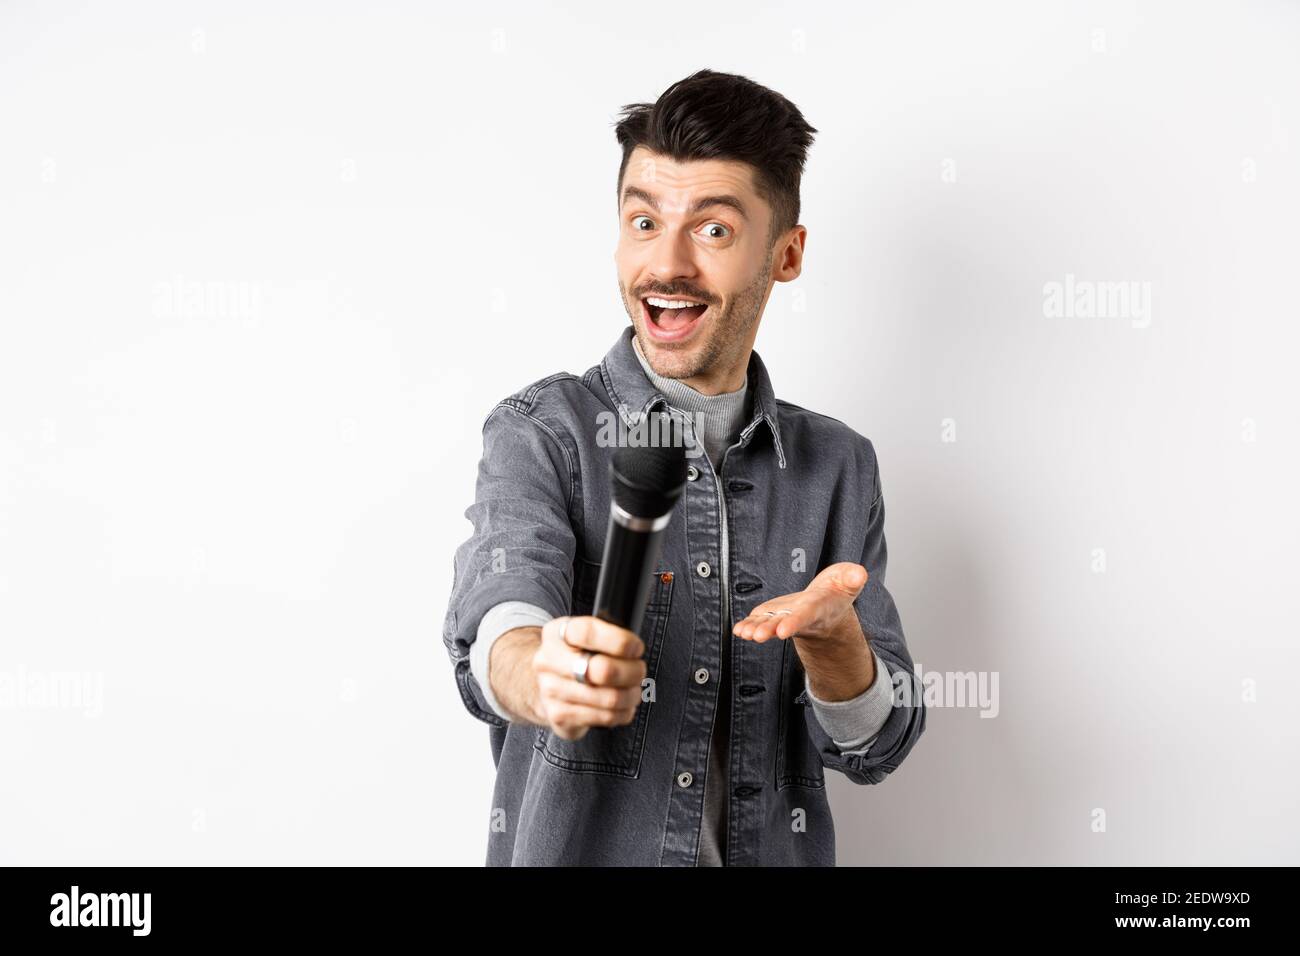 Schöner lächelnder Mann Strecke die Hand mit Mikrofon aus und gibt dir das  Mikrofon, stehend auf weißem Hintergrund Stockfotografie - Alamy